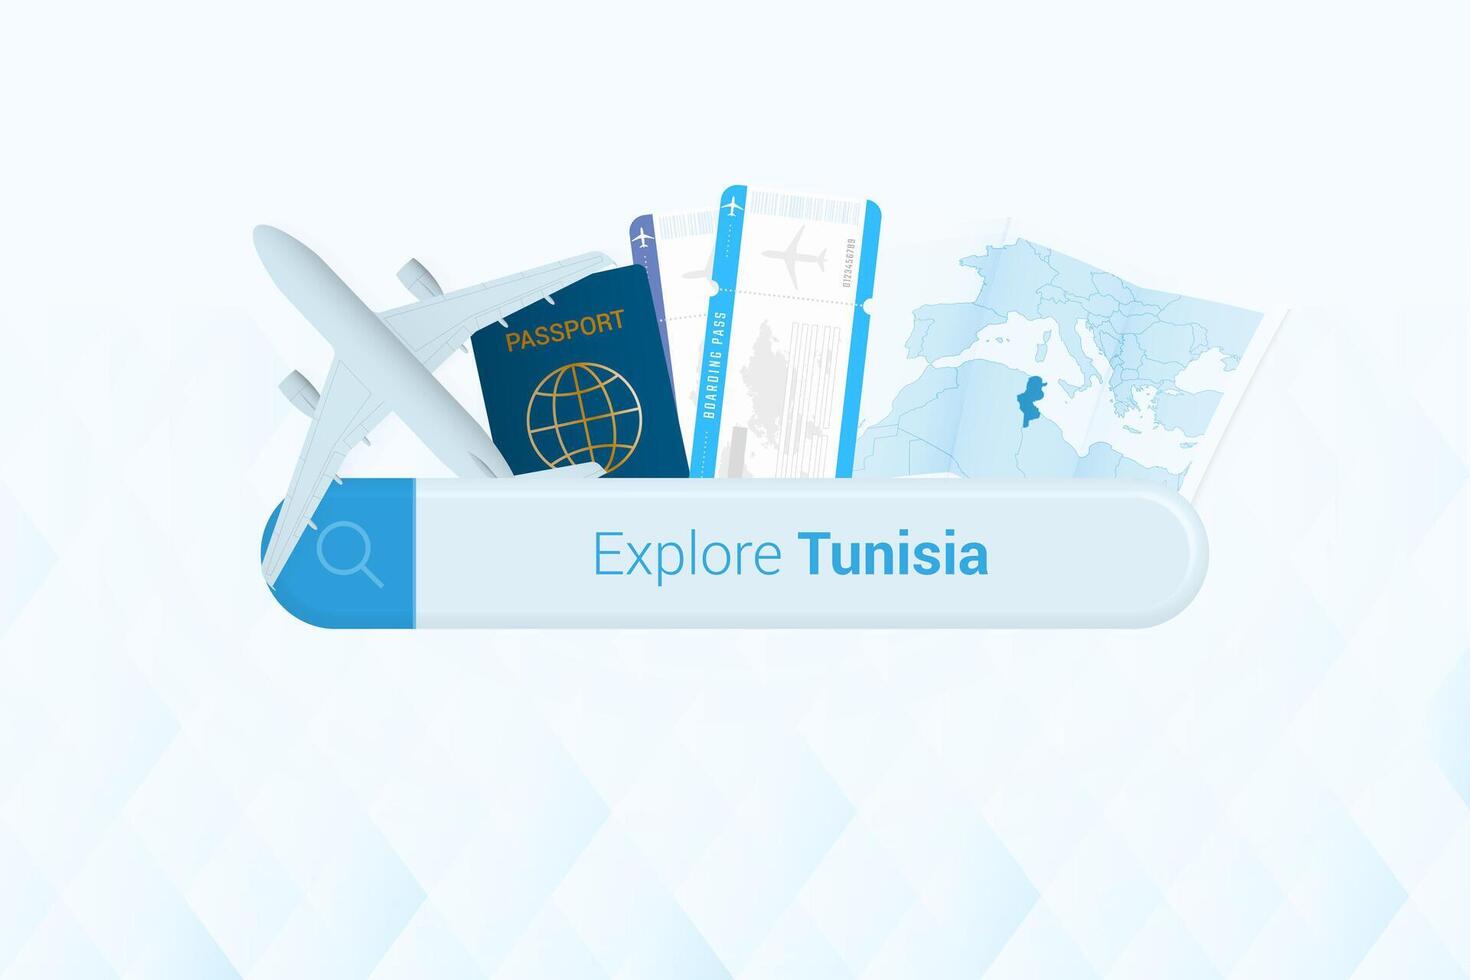 buscando Entradas a Túnez o viaje destino en Túnez. buscando bar con avión, pasaporte, embarque aprobar, Entradas y mapa. vector